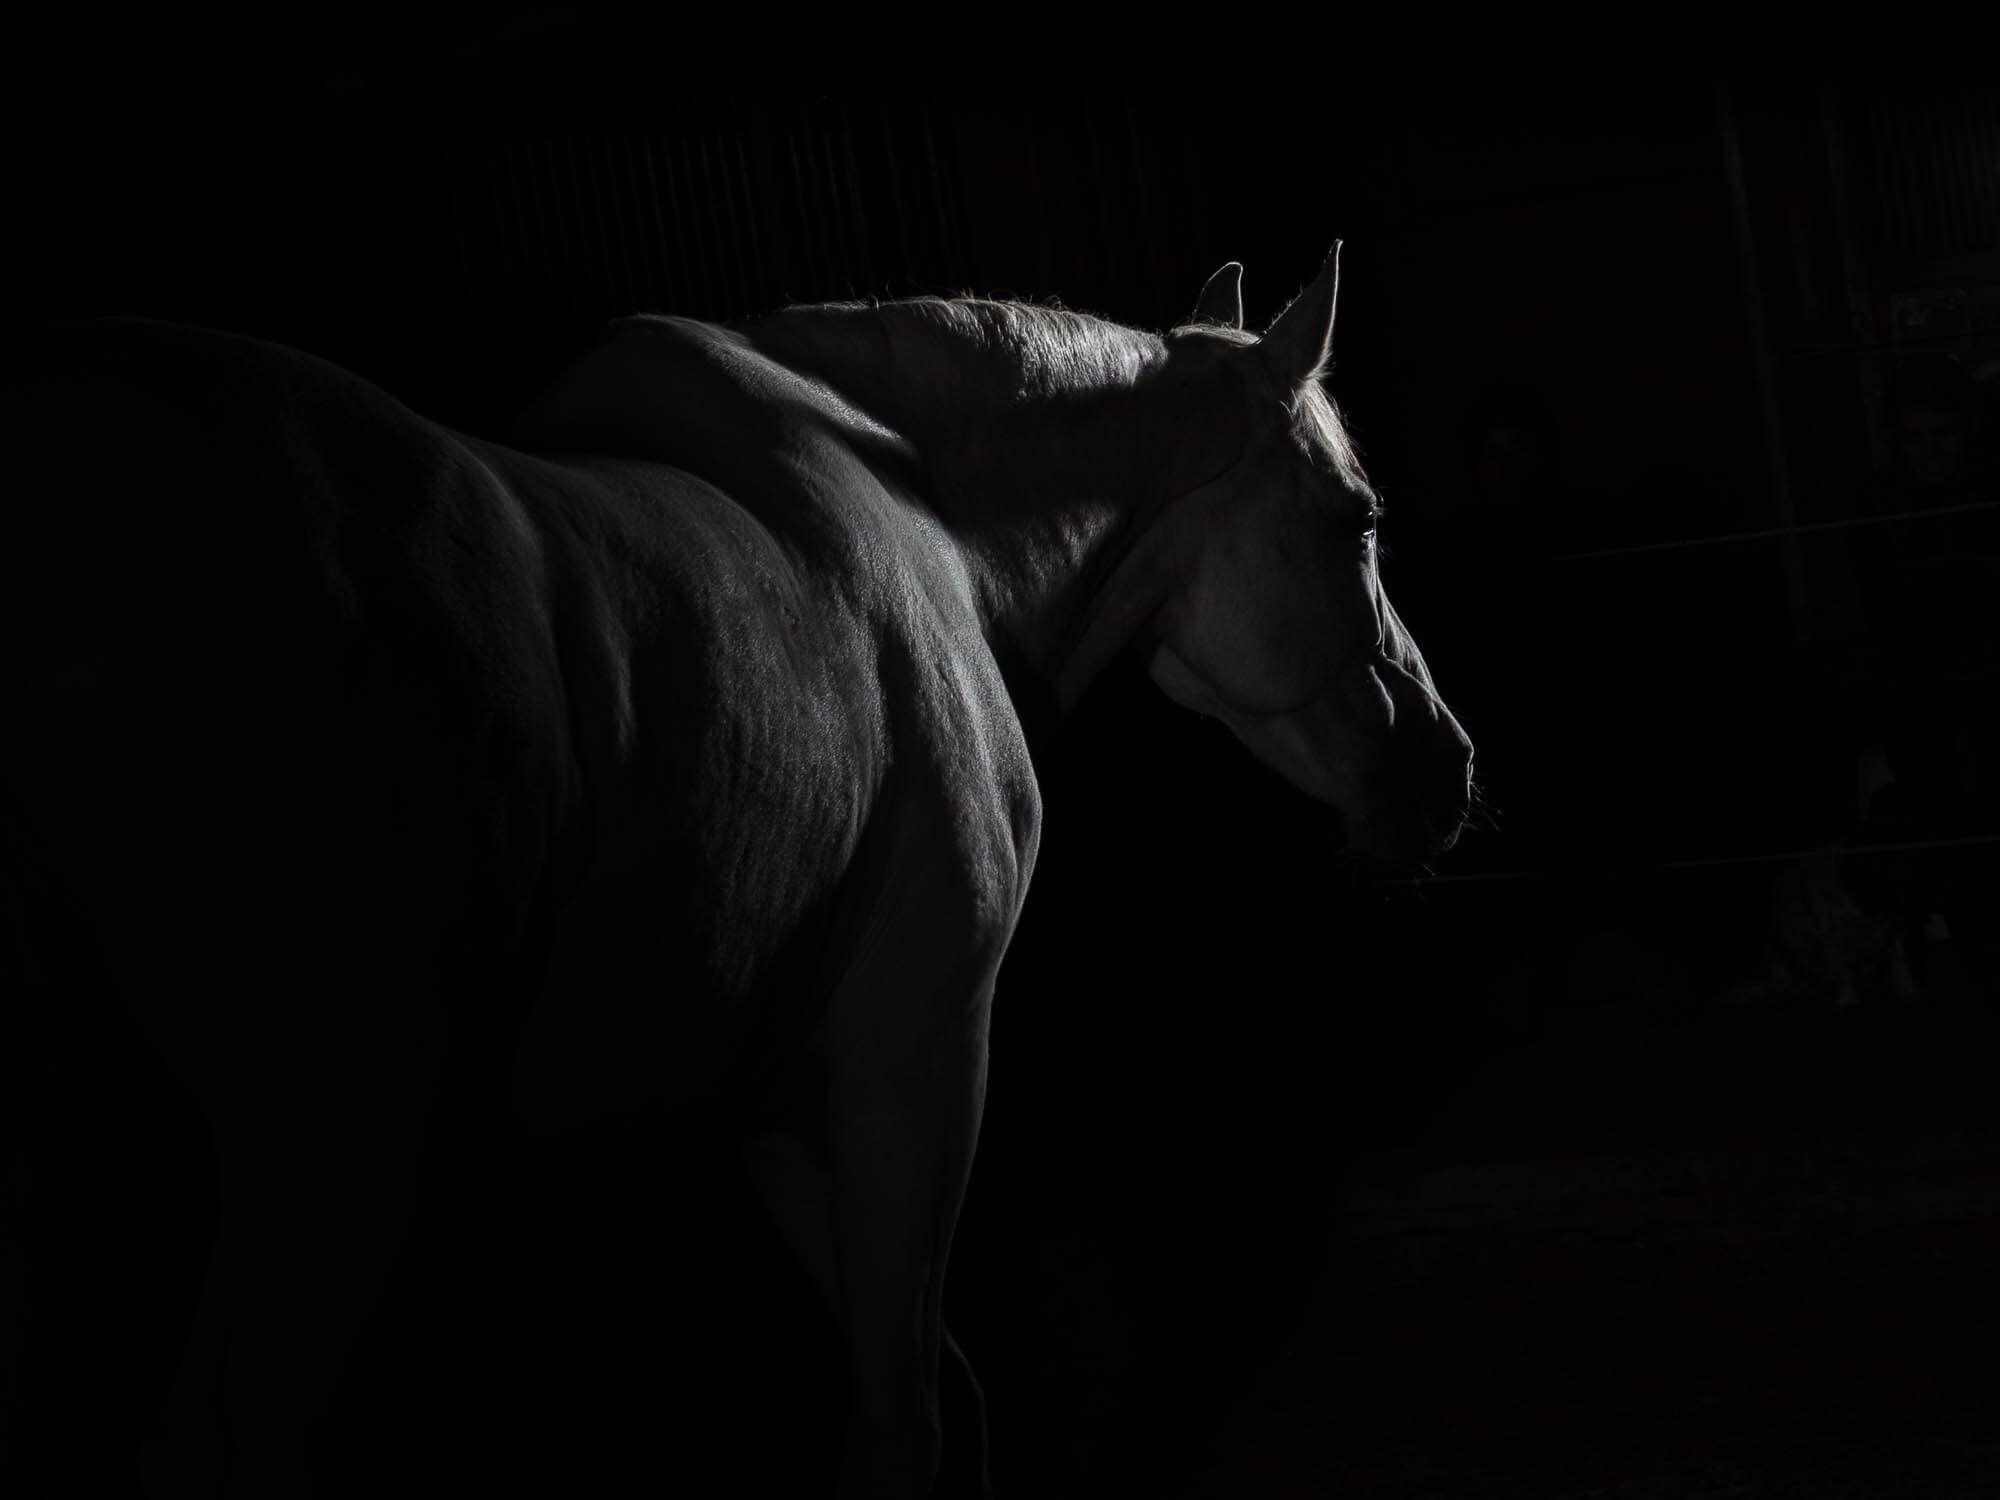 Fotoshooting mit Pferd: Lichtsilhouette eines weissen Pferdes